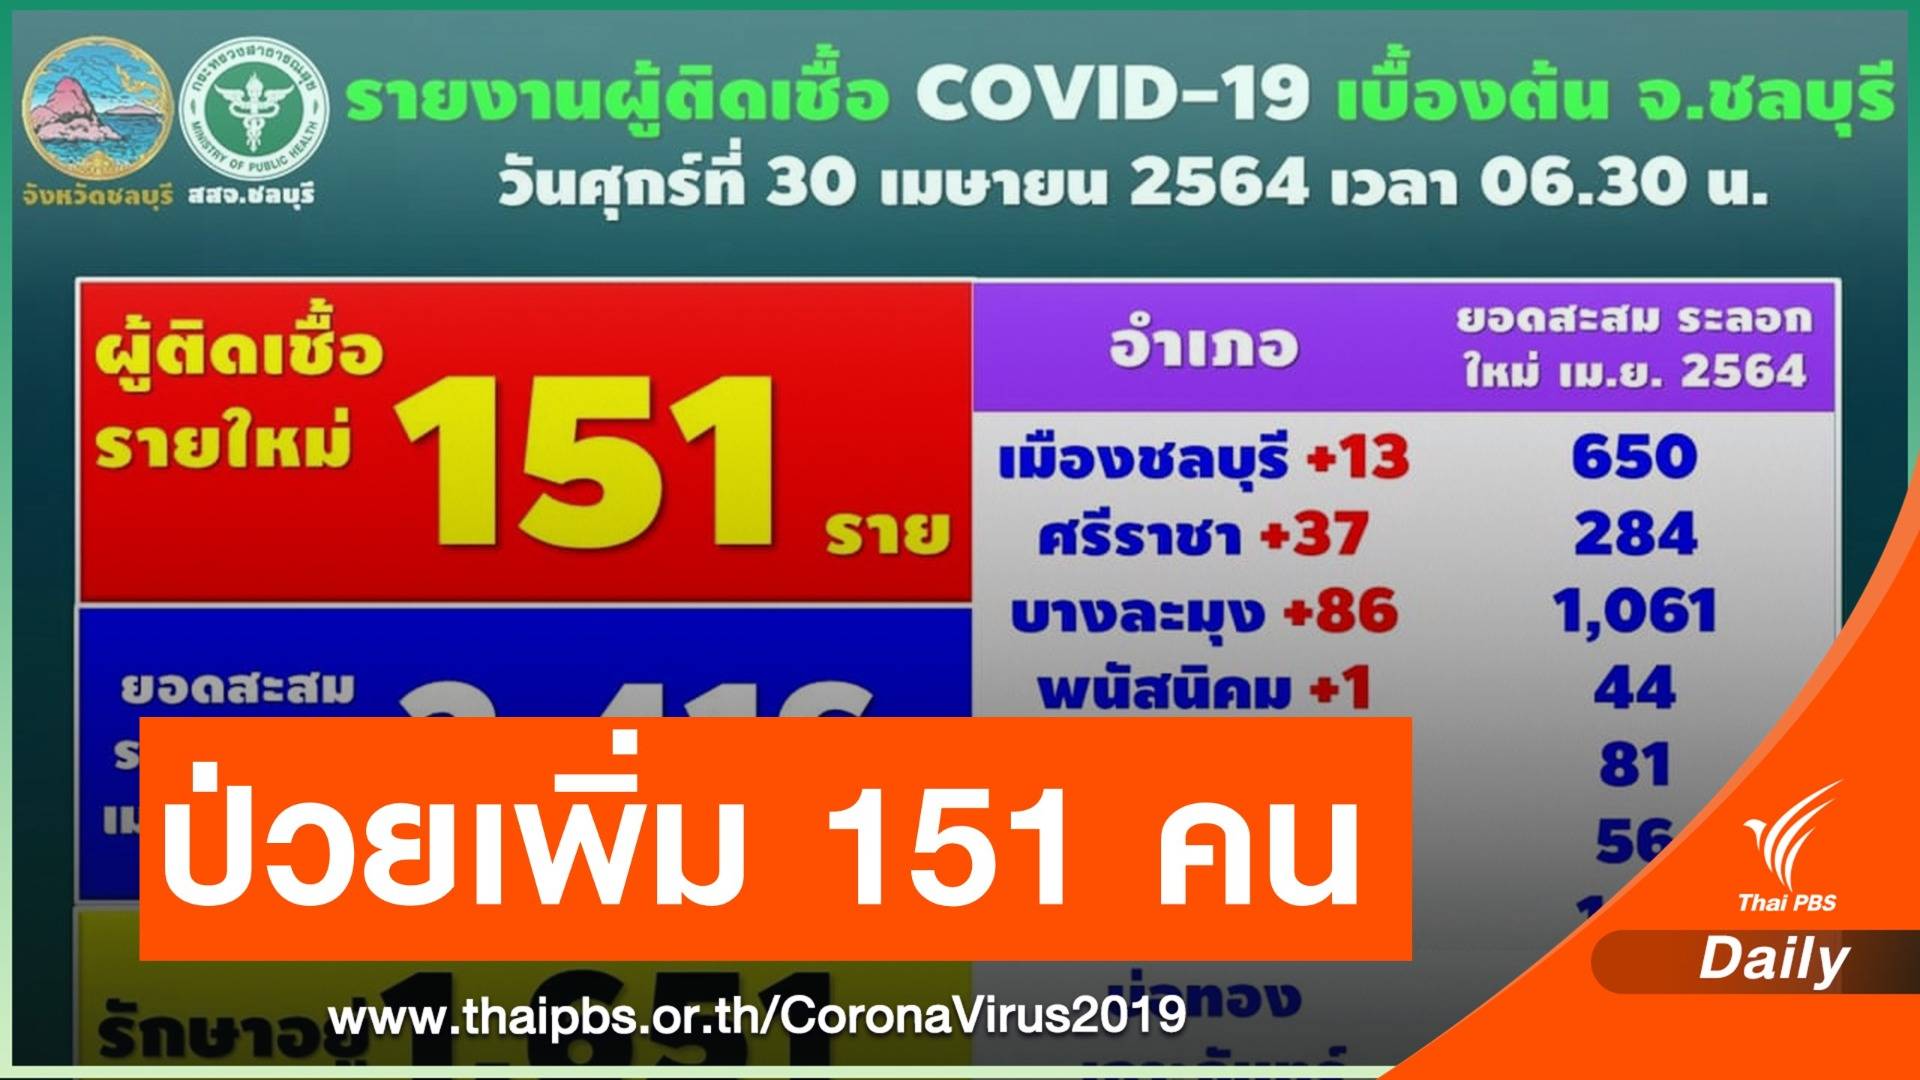 "ชลบุรี" พบผู้ติดเชื้อ COVID-19 รายใหม่ 151 คน 